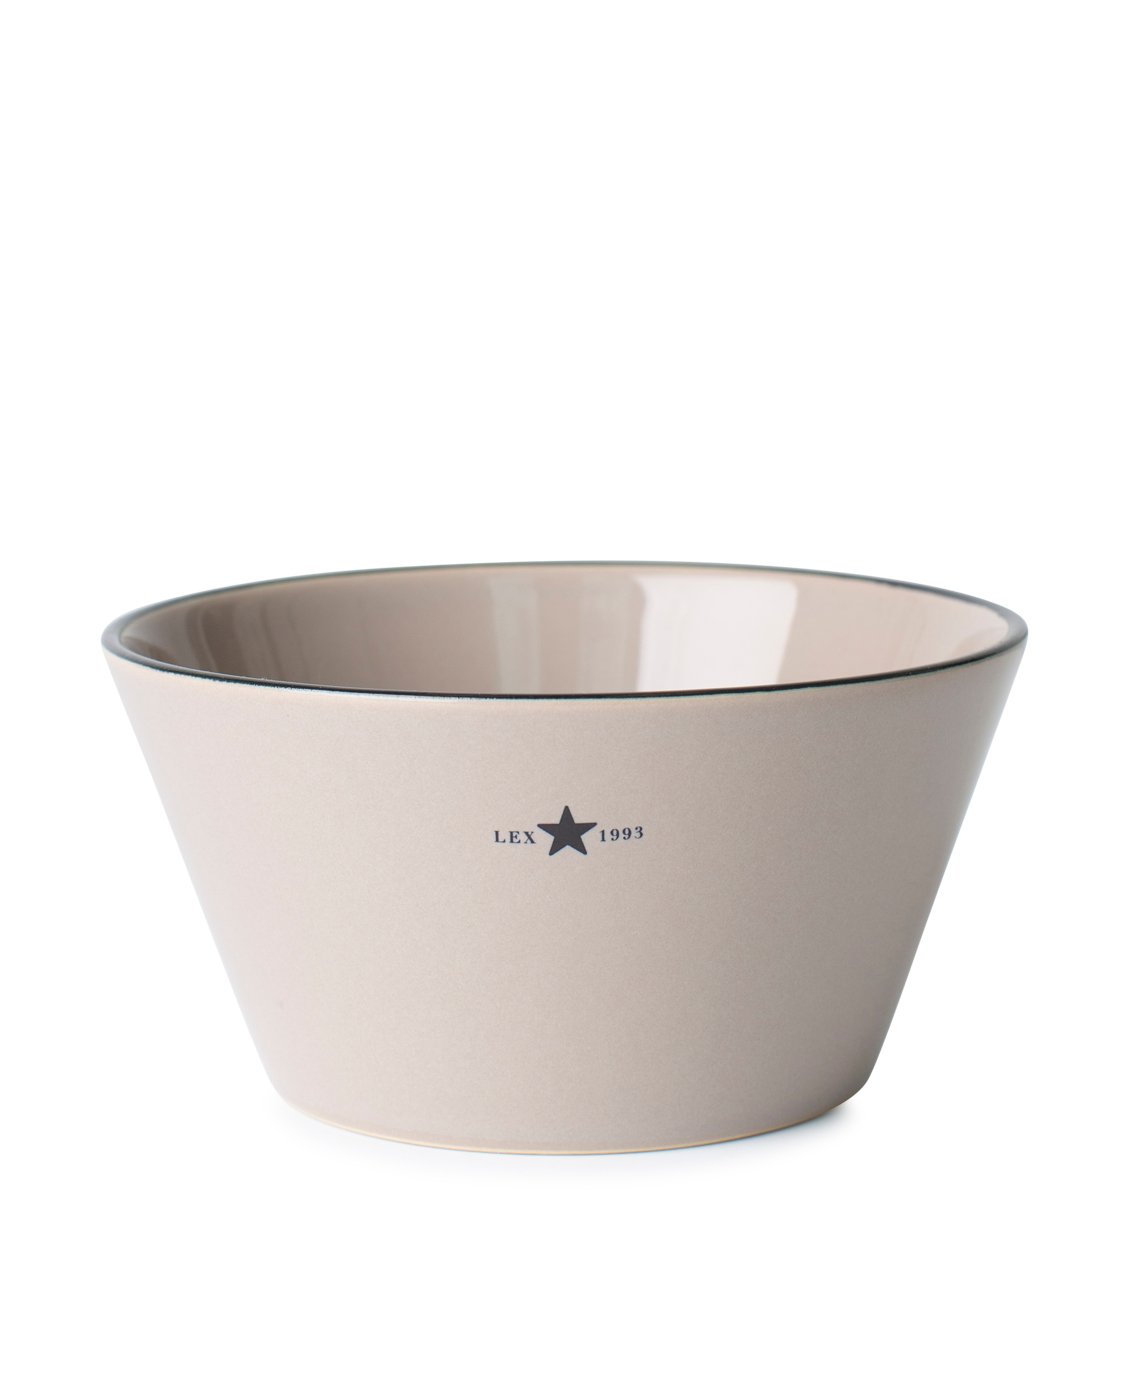 Lexington Stoneware bowl